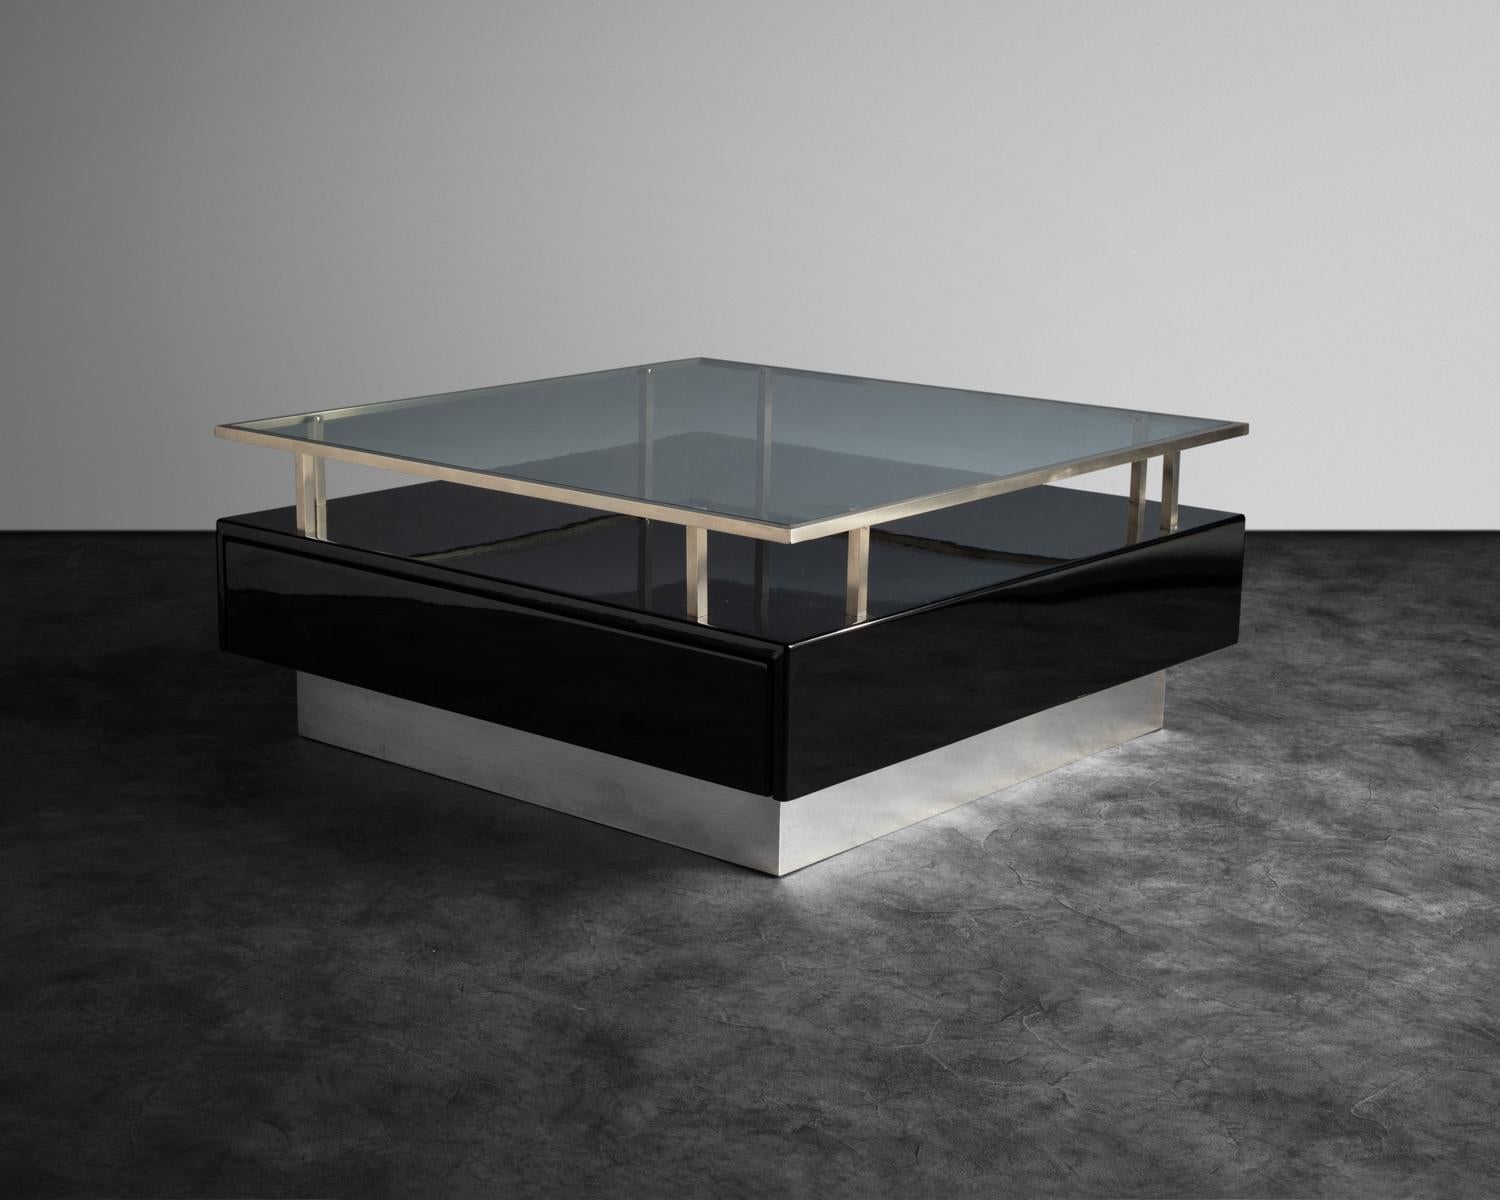 Quadratische, schwarz lackierte Tische mit einem erhöhten Aluminiumrahmen, der eine Glasplatte trägt. Die Tischgestelle sind mit einer geteilten Schublade ausgestattet.
 